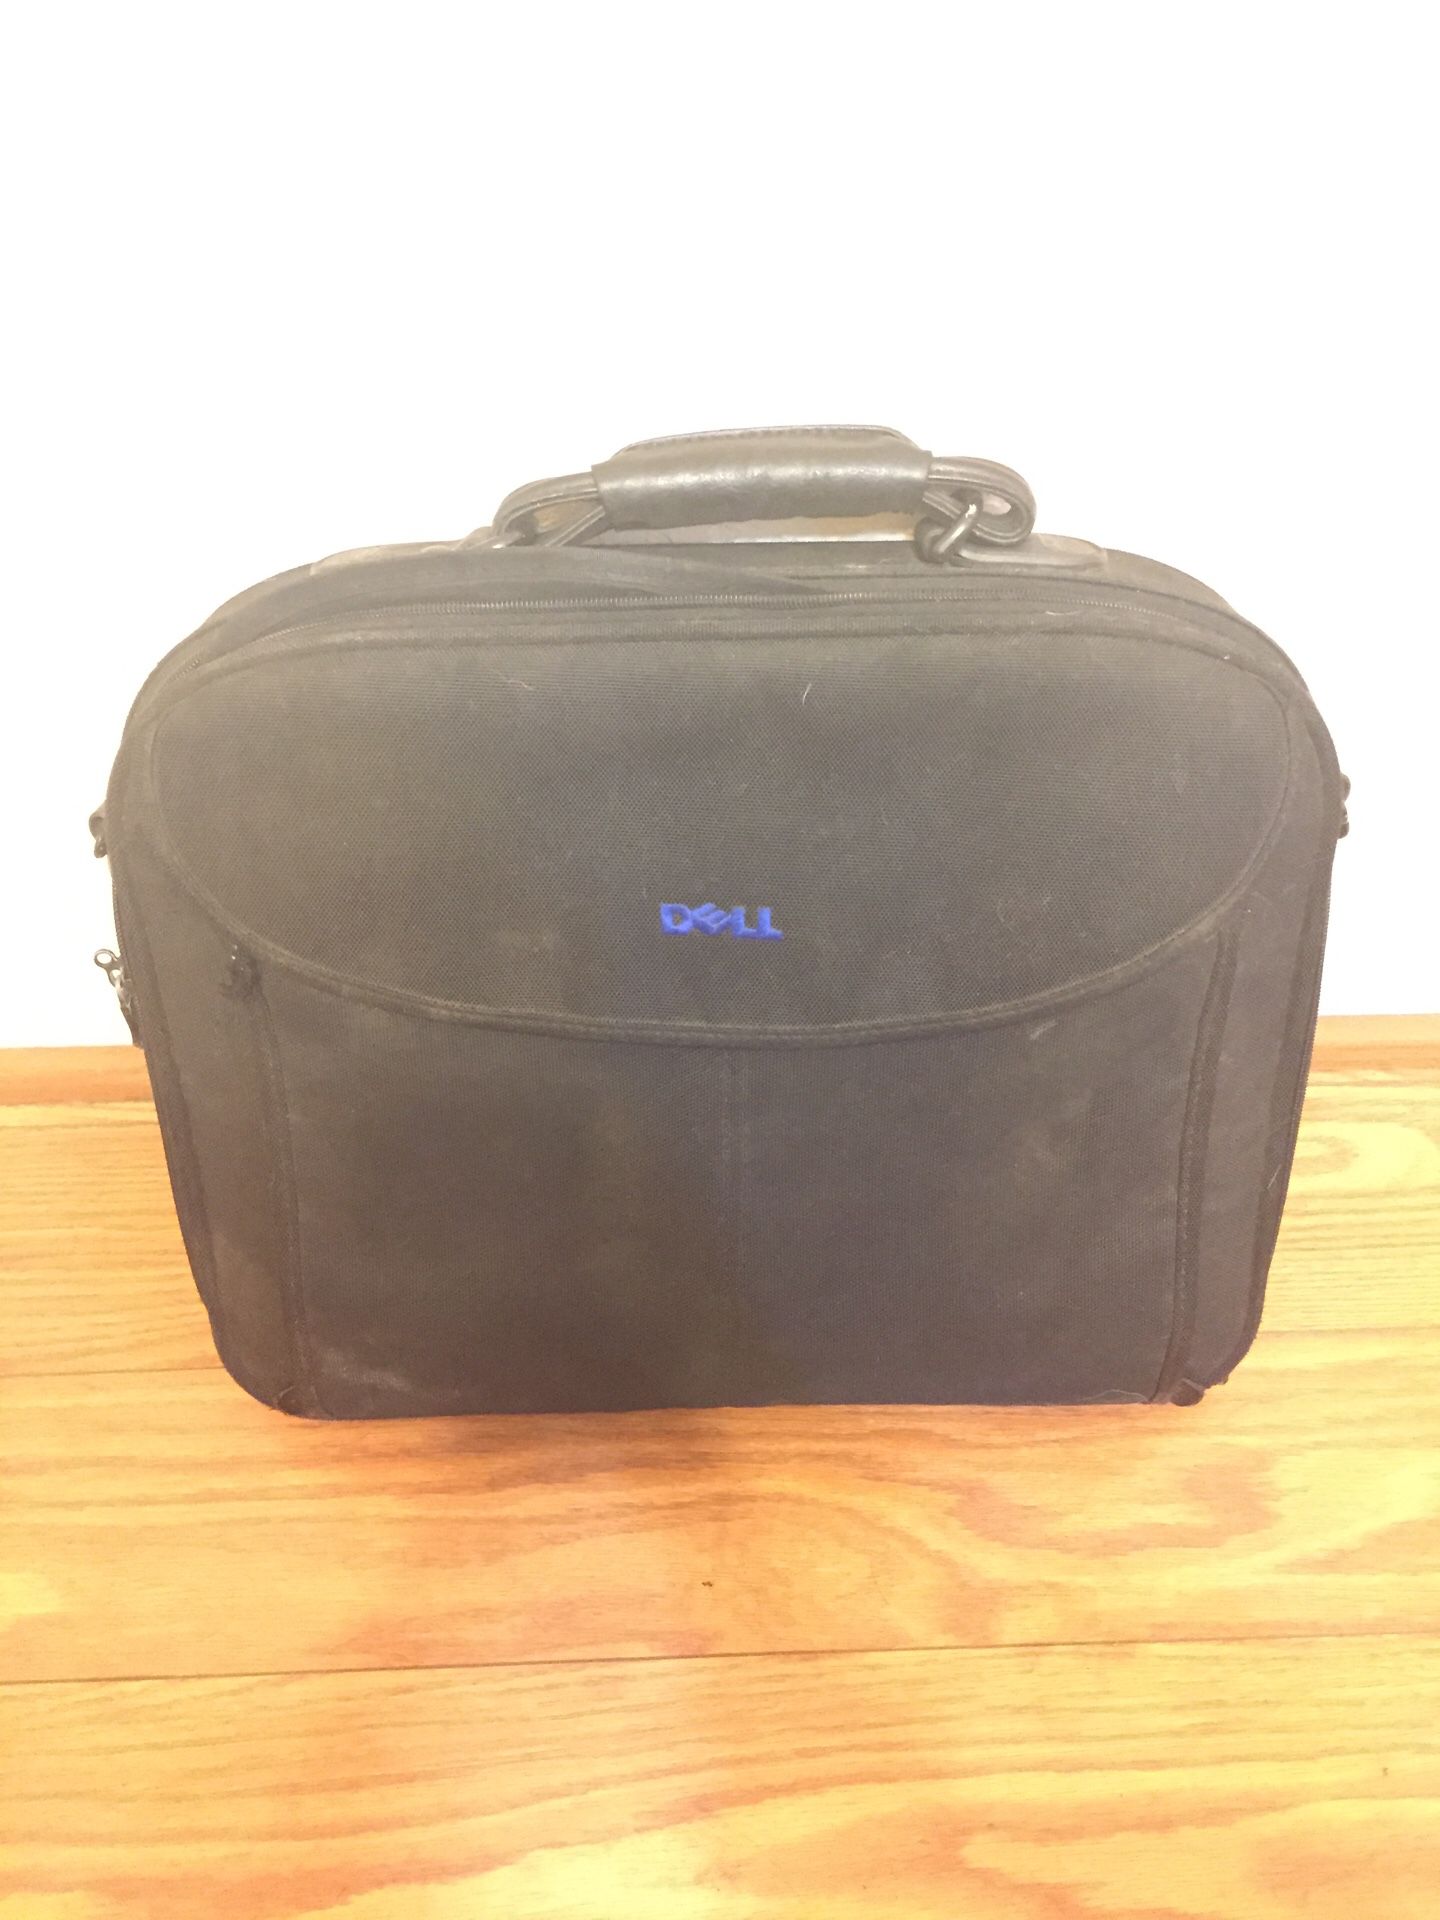 Dell laptop case